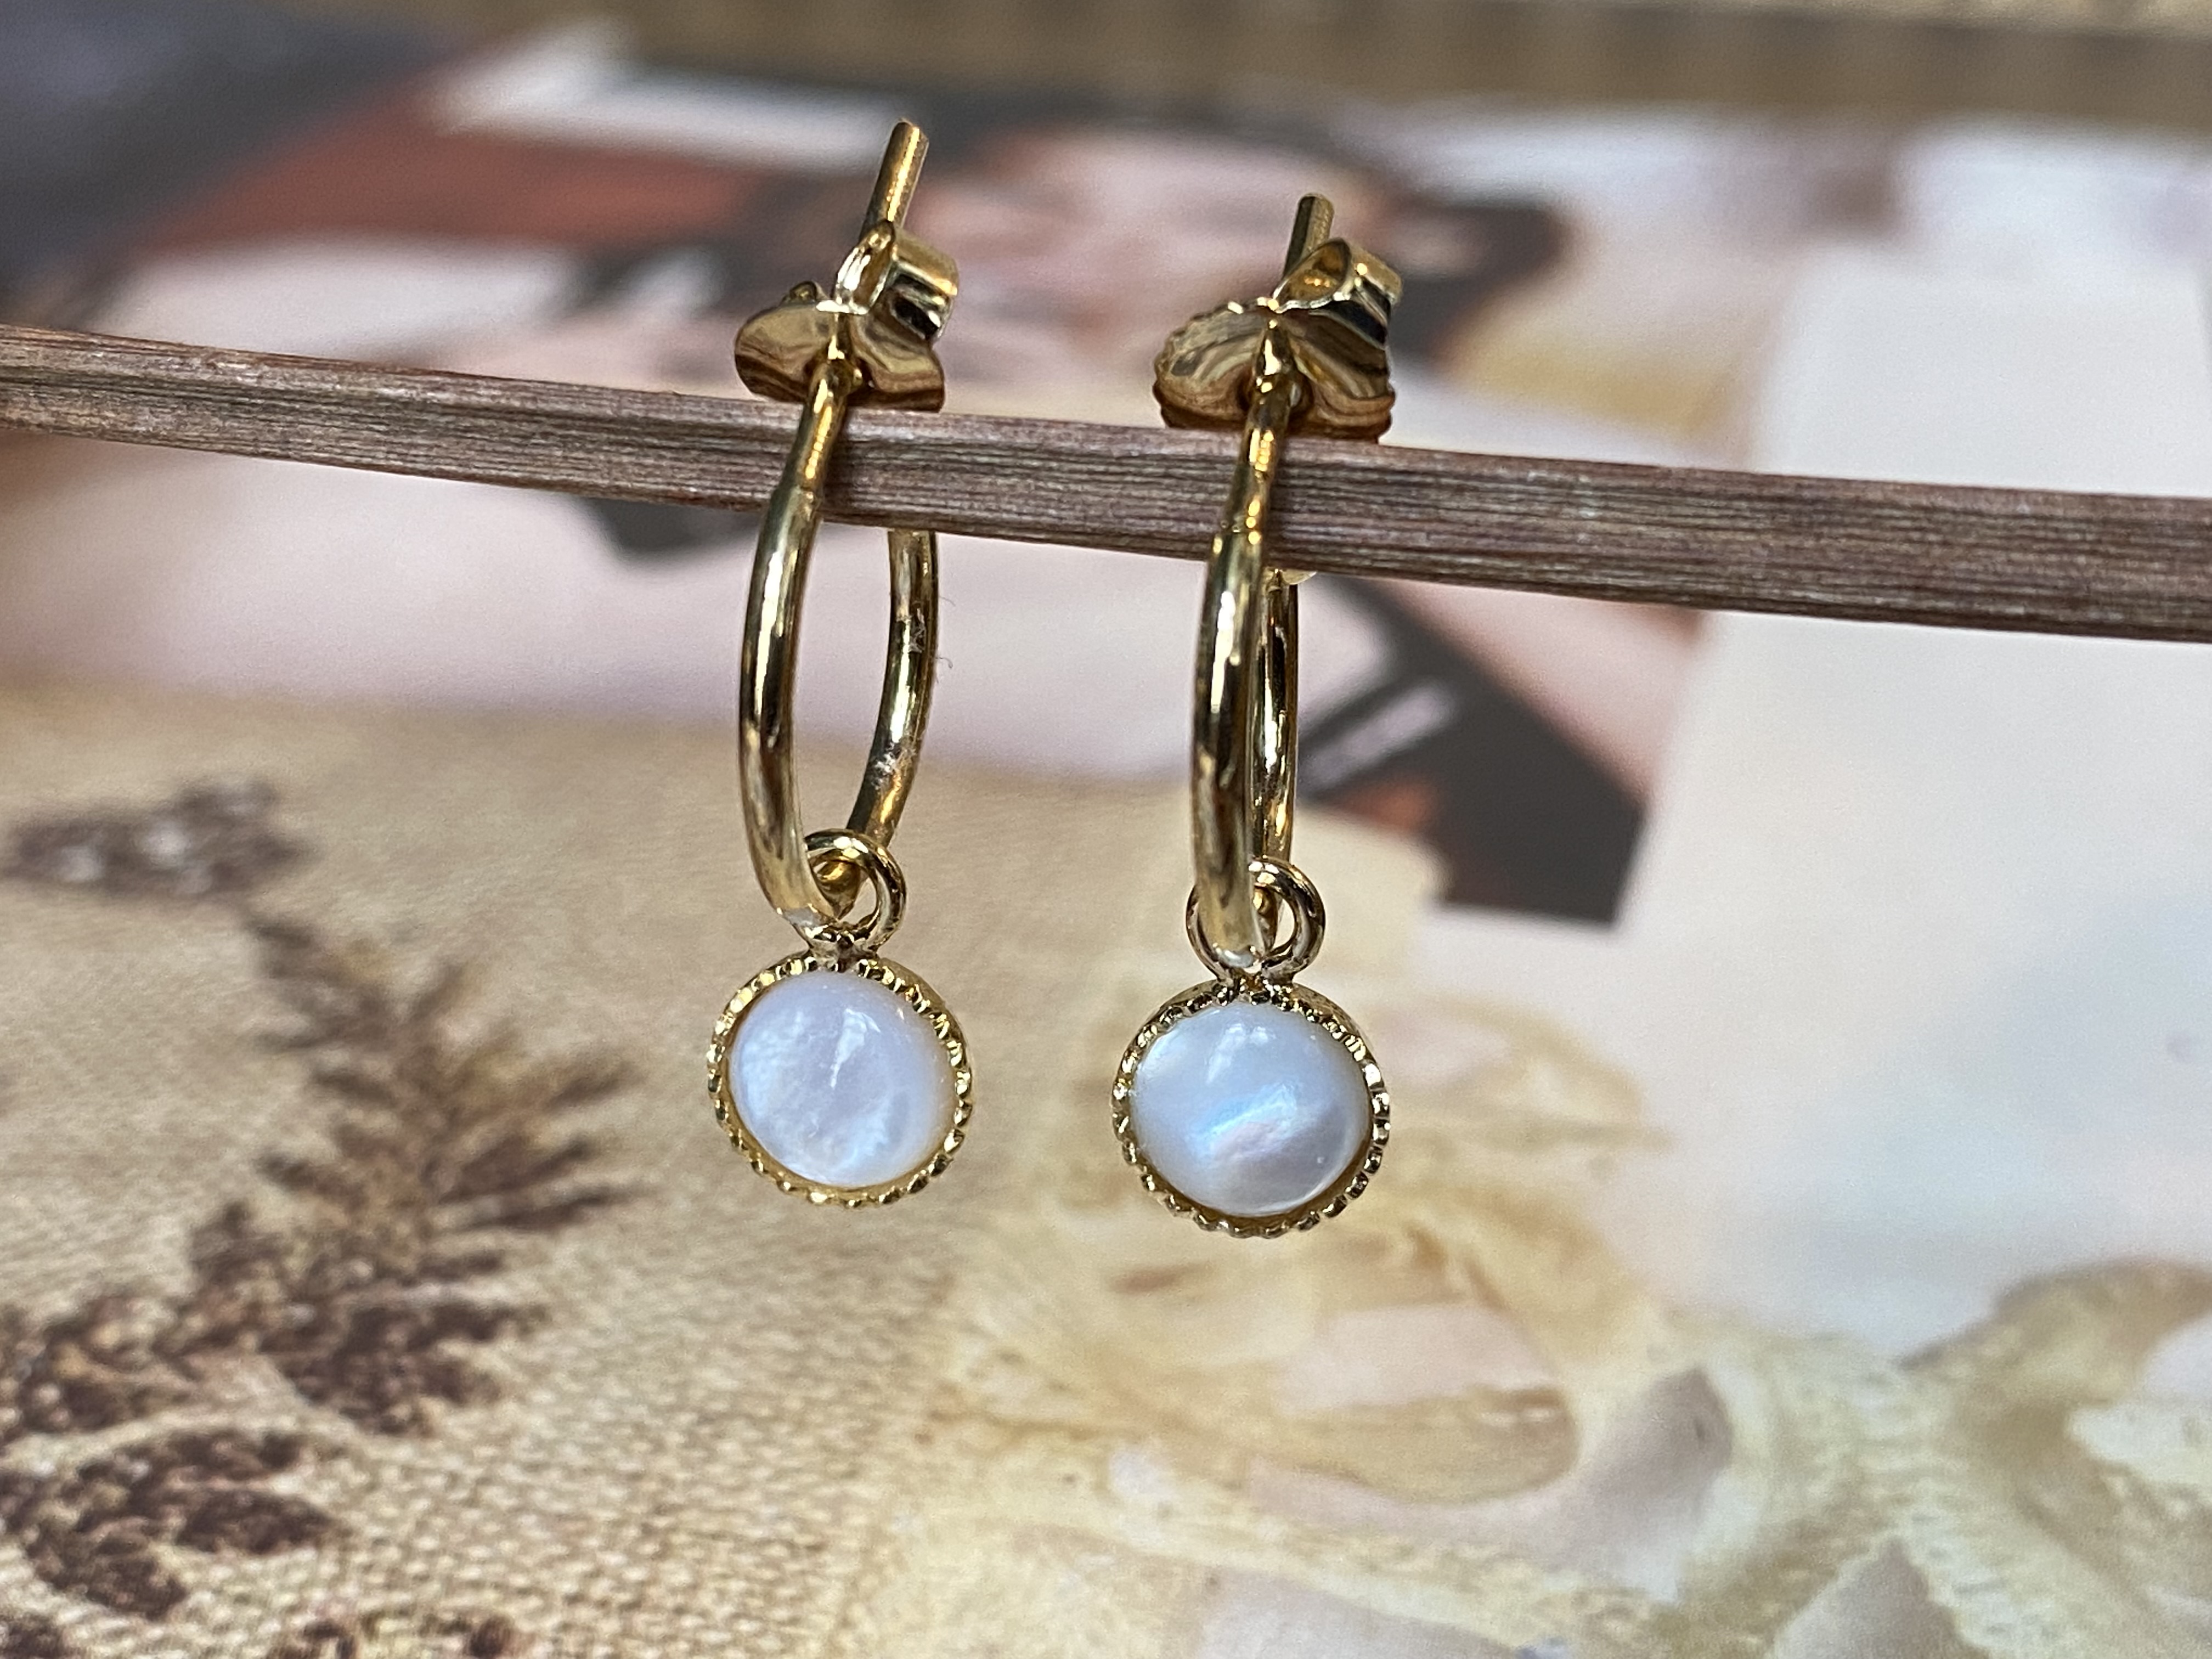 Boucles d'oreilles en nacre blanche - Dolita select store de bijoux  fantaisie